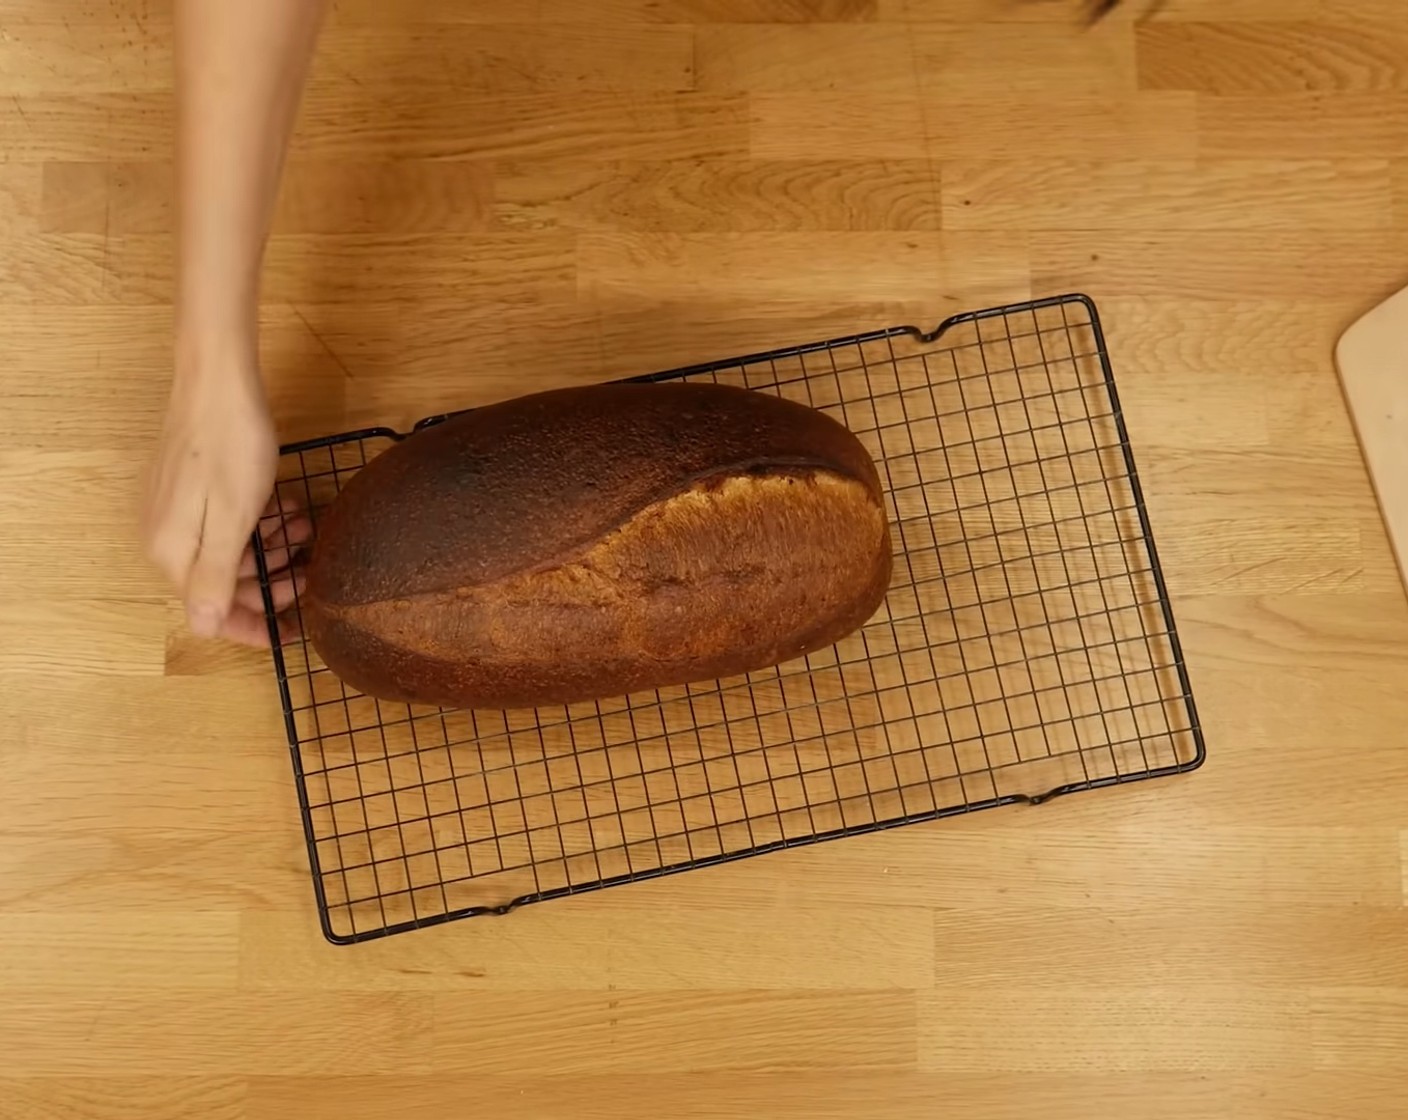 Schritt 12 Nach dem Backen das Brot auf einem Gitter auskühlen lassen.